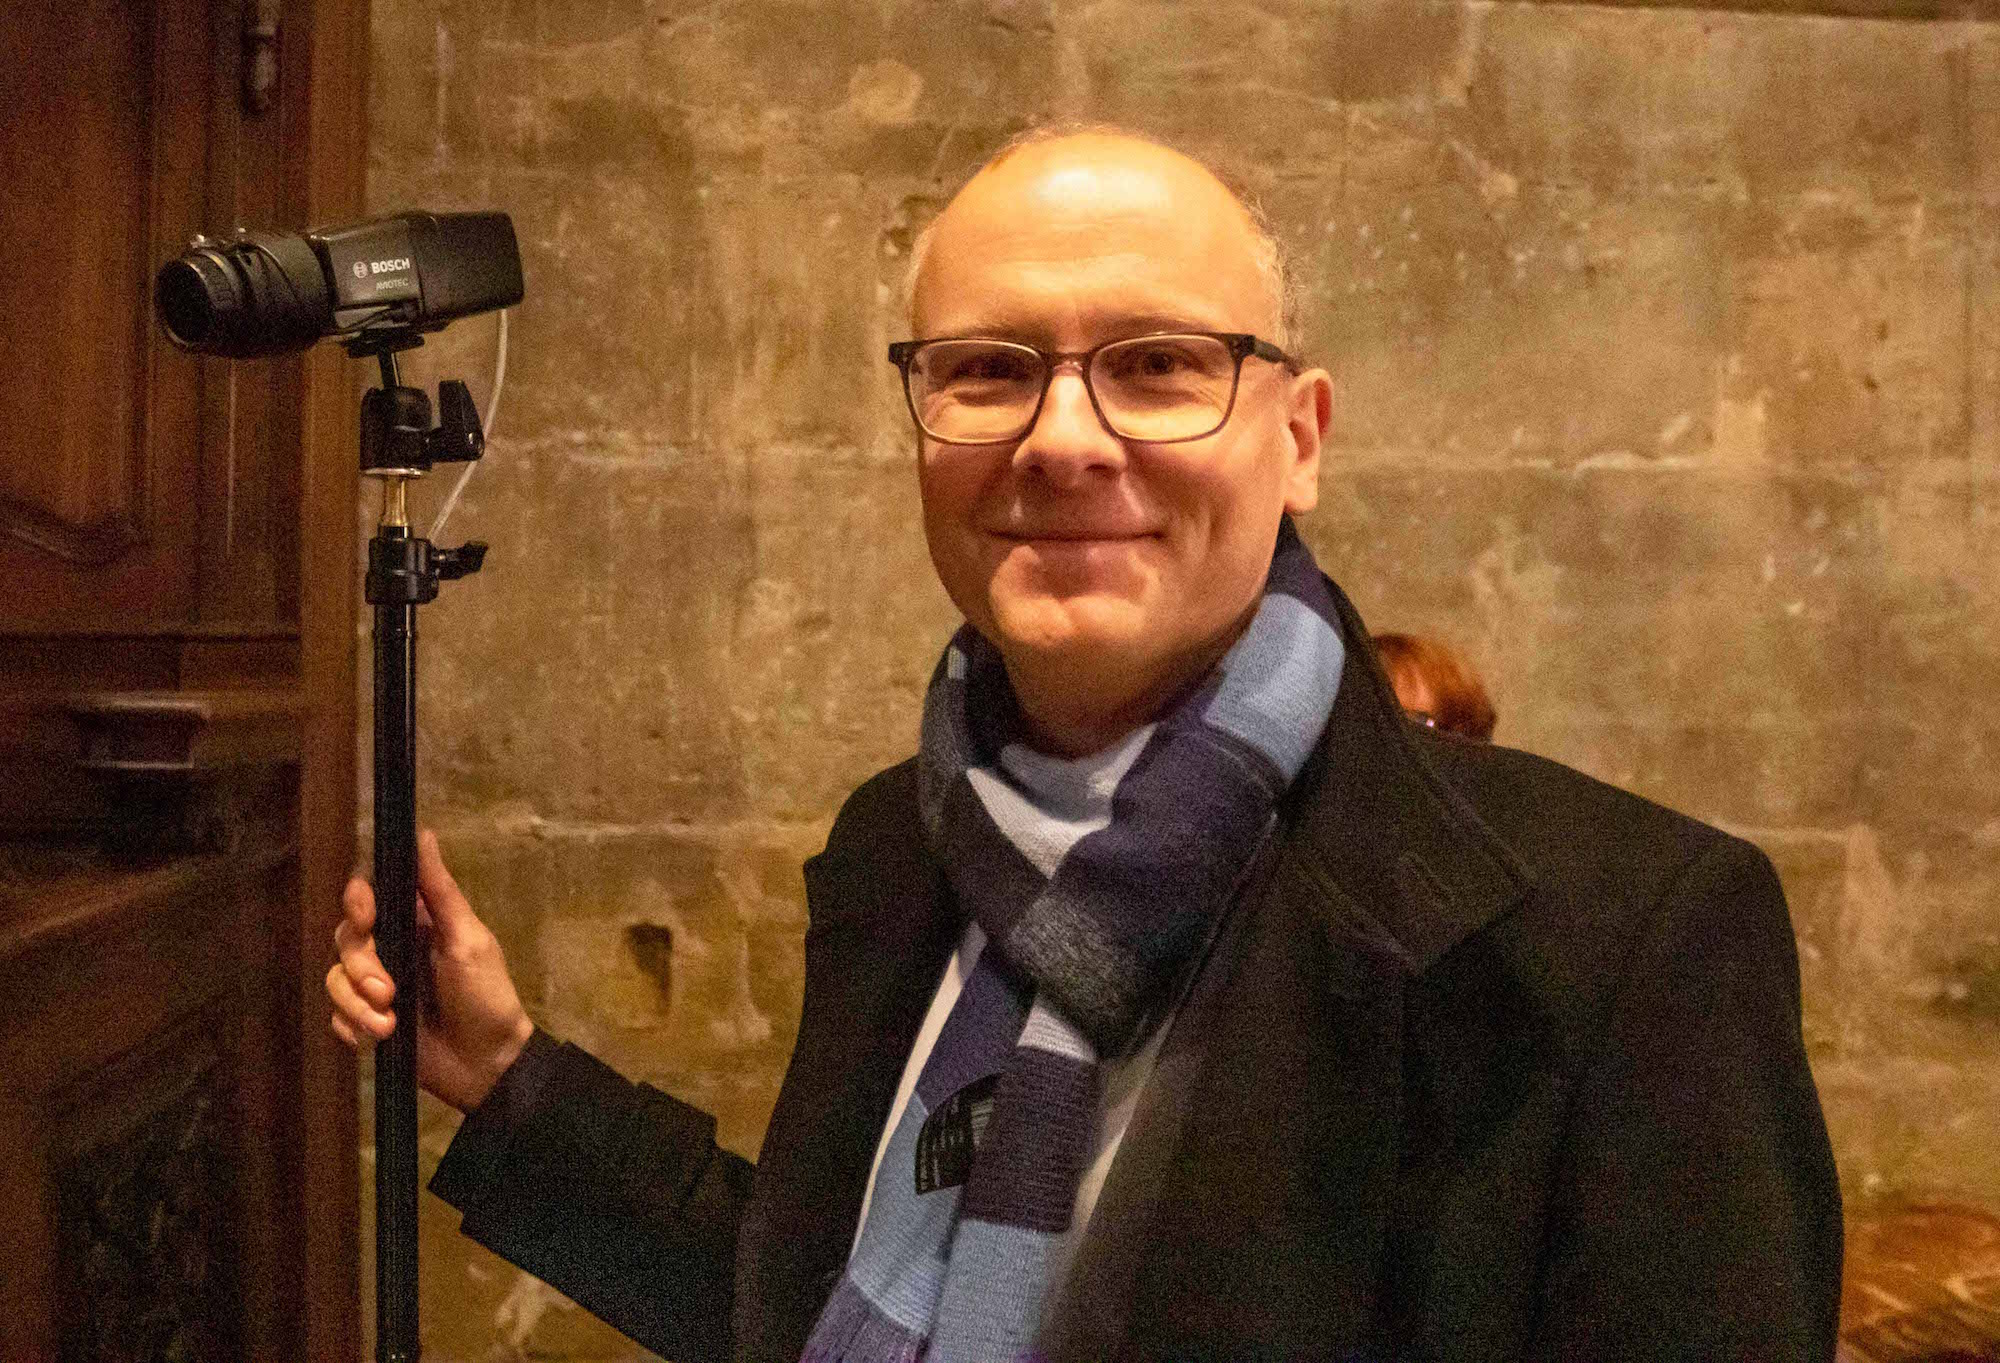 Nicht ohne Stolz präsentiert Sören Wittmann von der Bosch Sicherheitssysteme GmbH die Aviotec-Kamera, ein wahres Wunderwerk der Technik. (c) Ralf Roeger